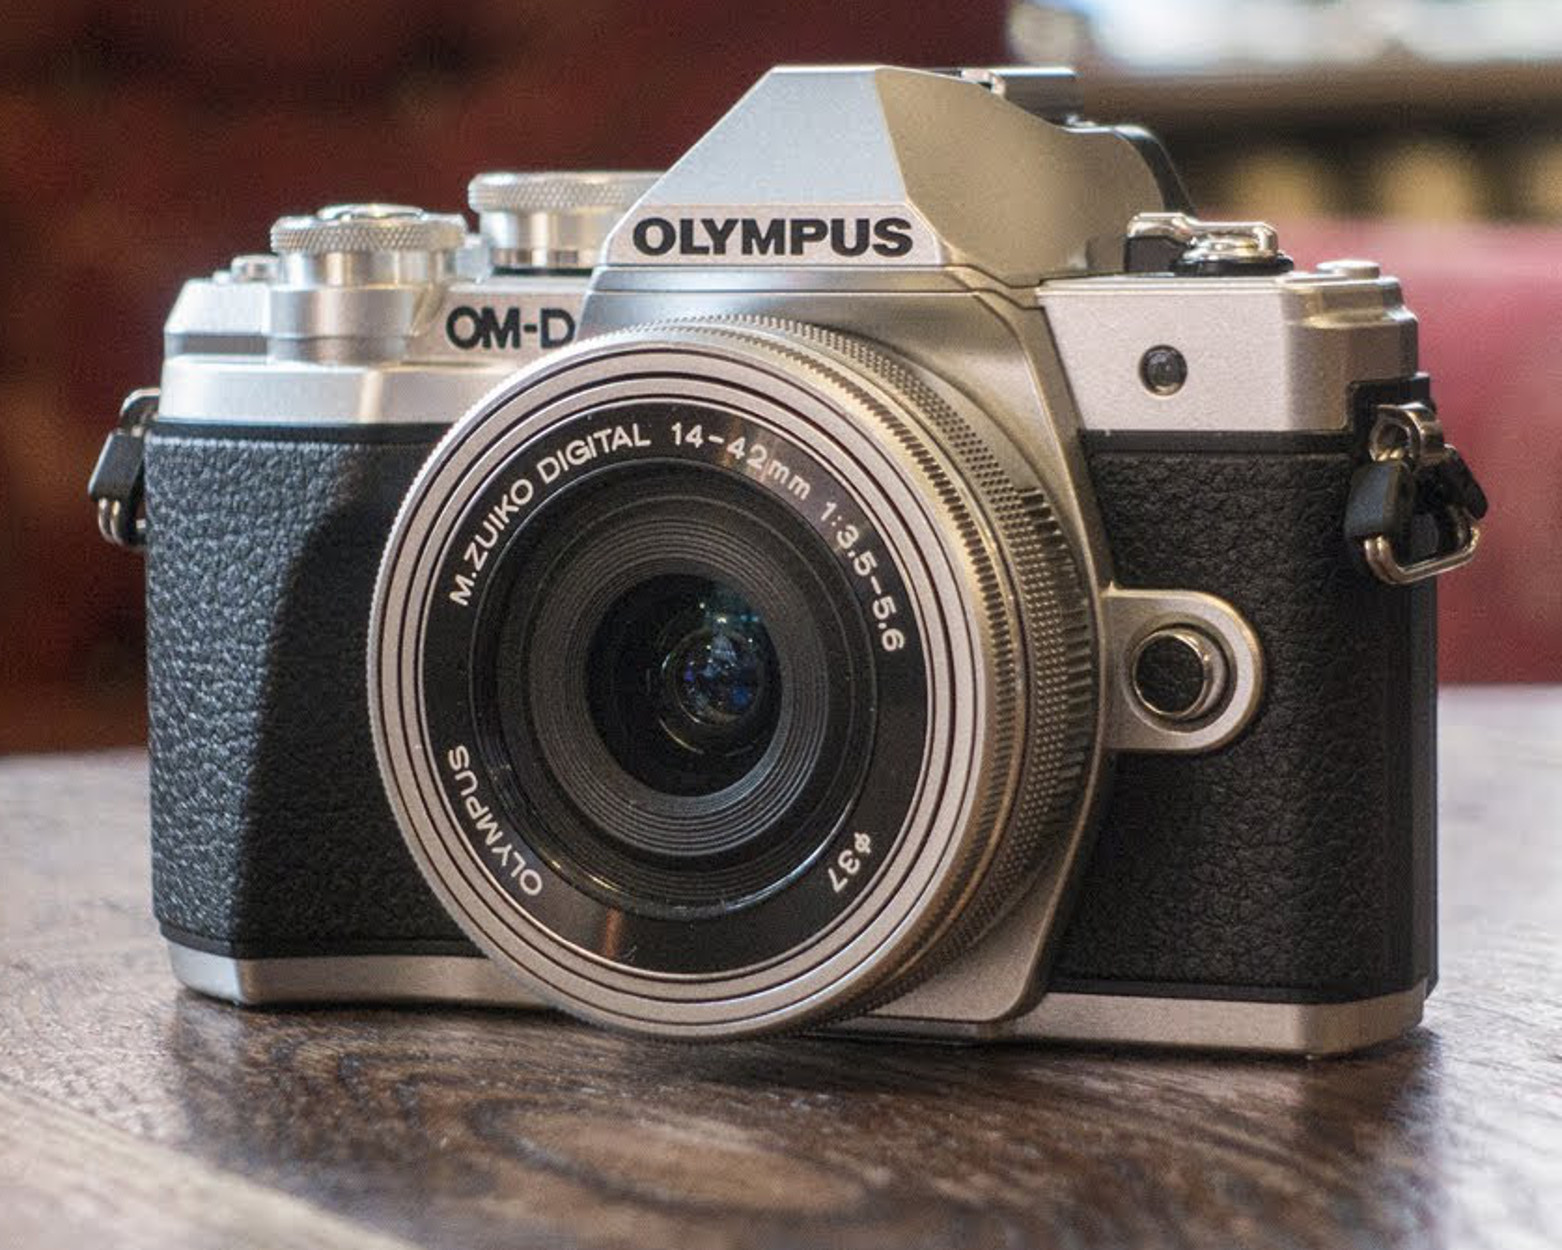 Τέλος εποχής για τις φωτογραφικές μηχανές Olympus – Το ένδοξο παρελθόν, ο ανταγωνισμός σήμερα και η επόμενη μέρα